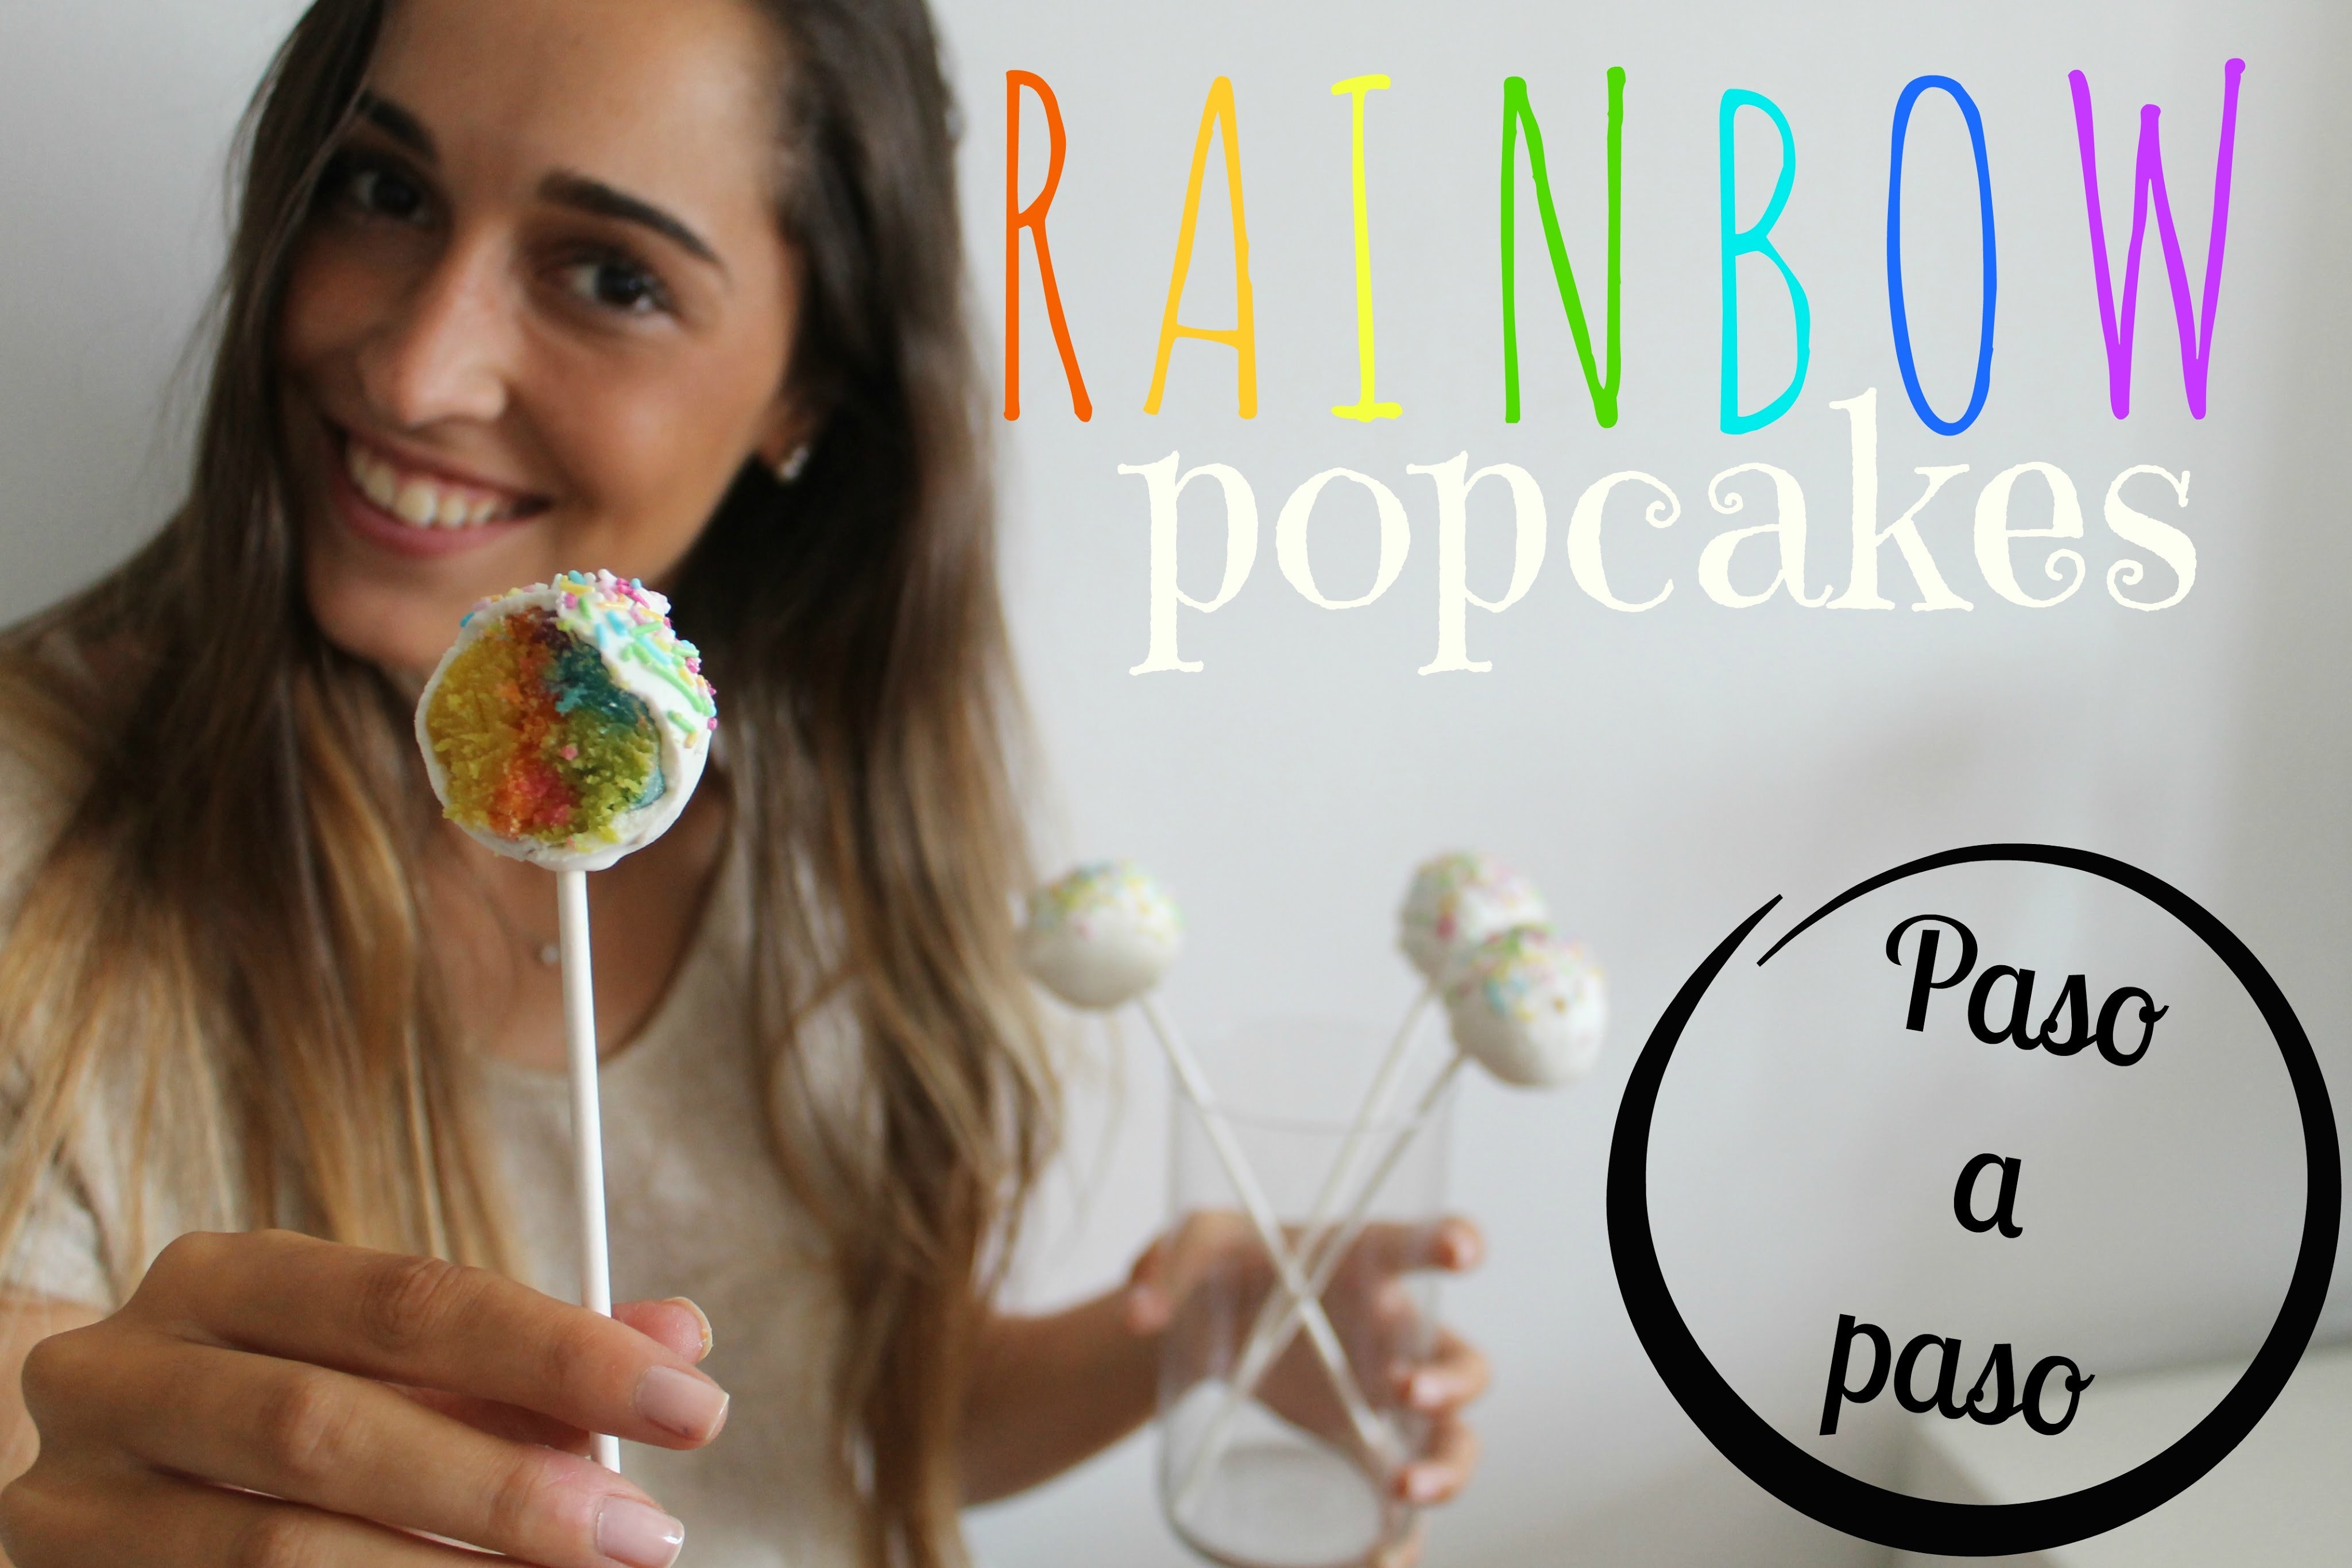 RECETA ORIGINAL | Rainbow Popcakes paso a paso